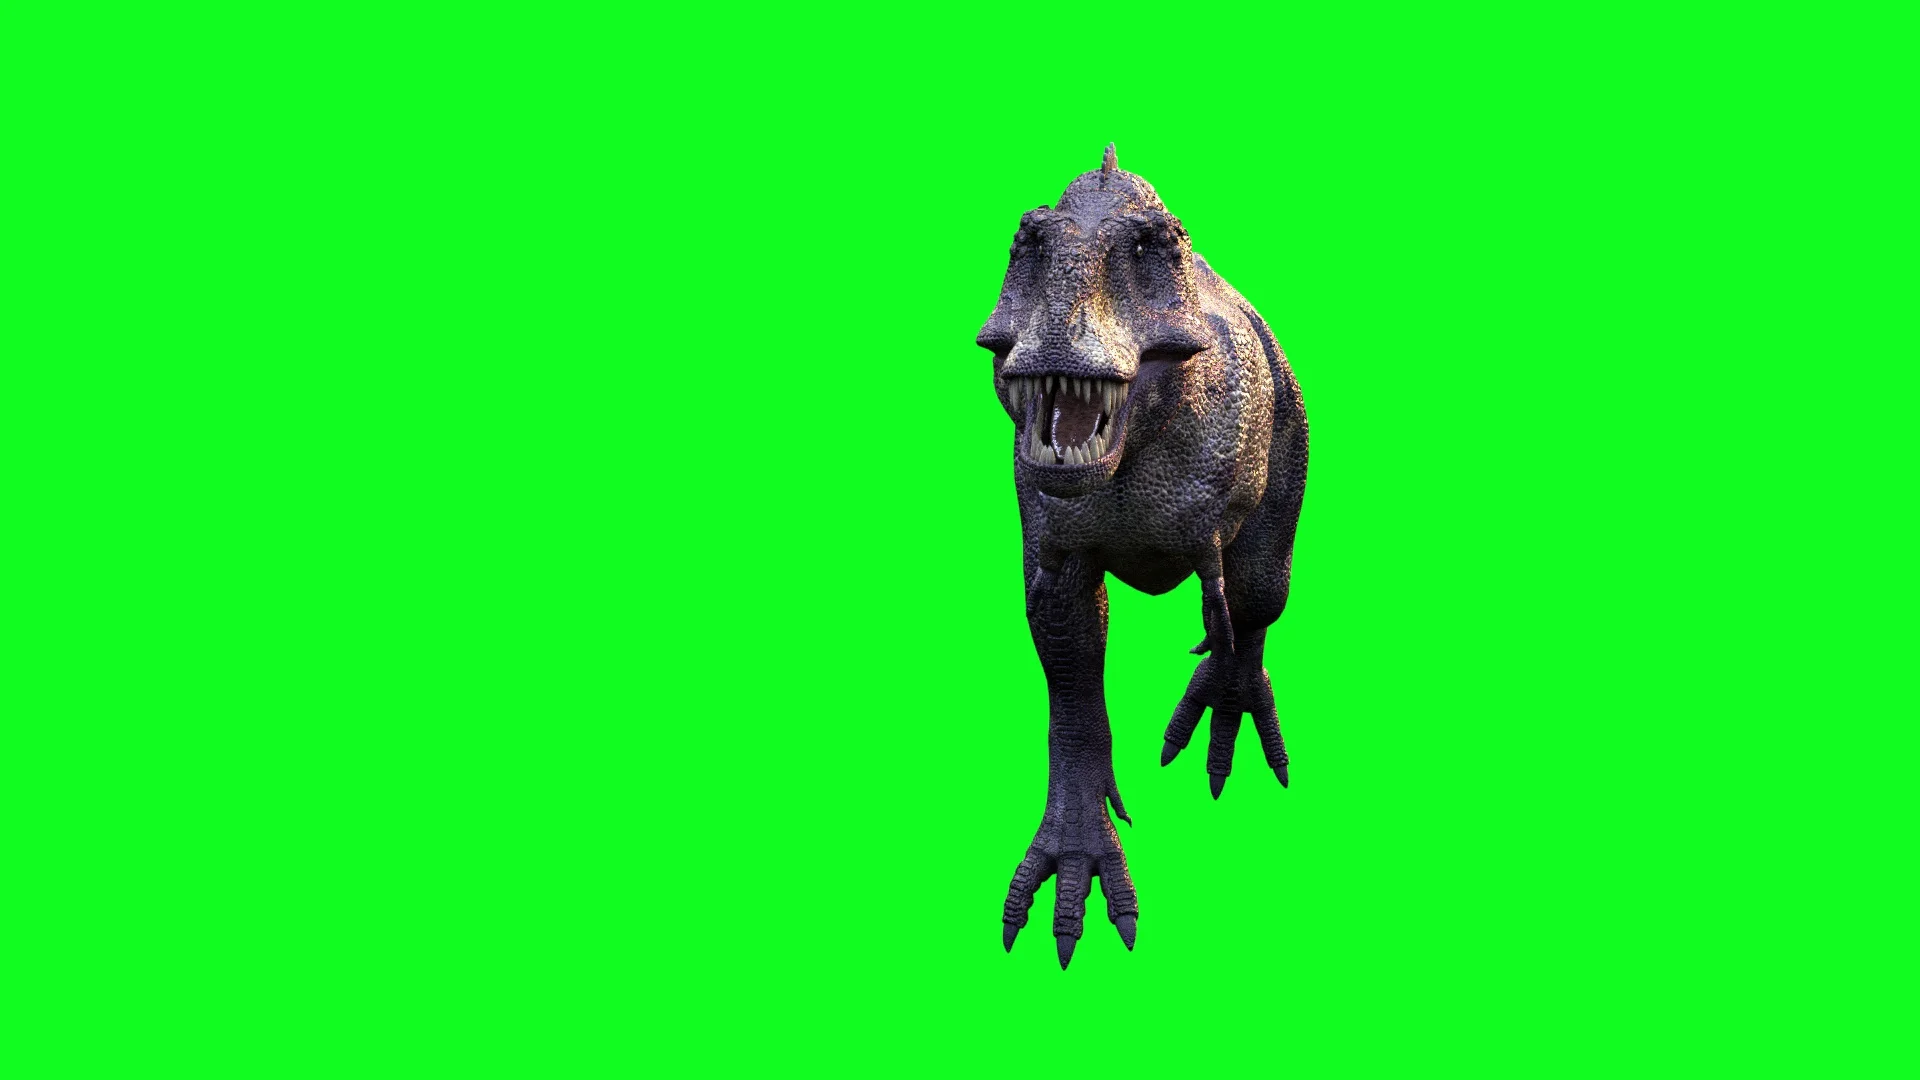 T-Rex dinosaur running. 3D illustration. - Stock Illustration